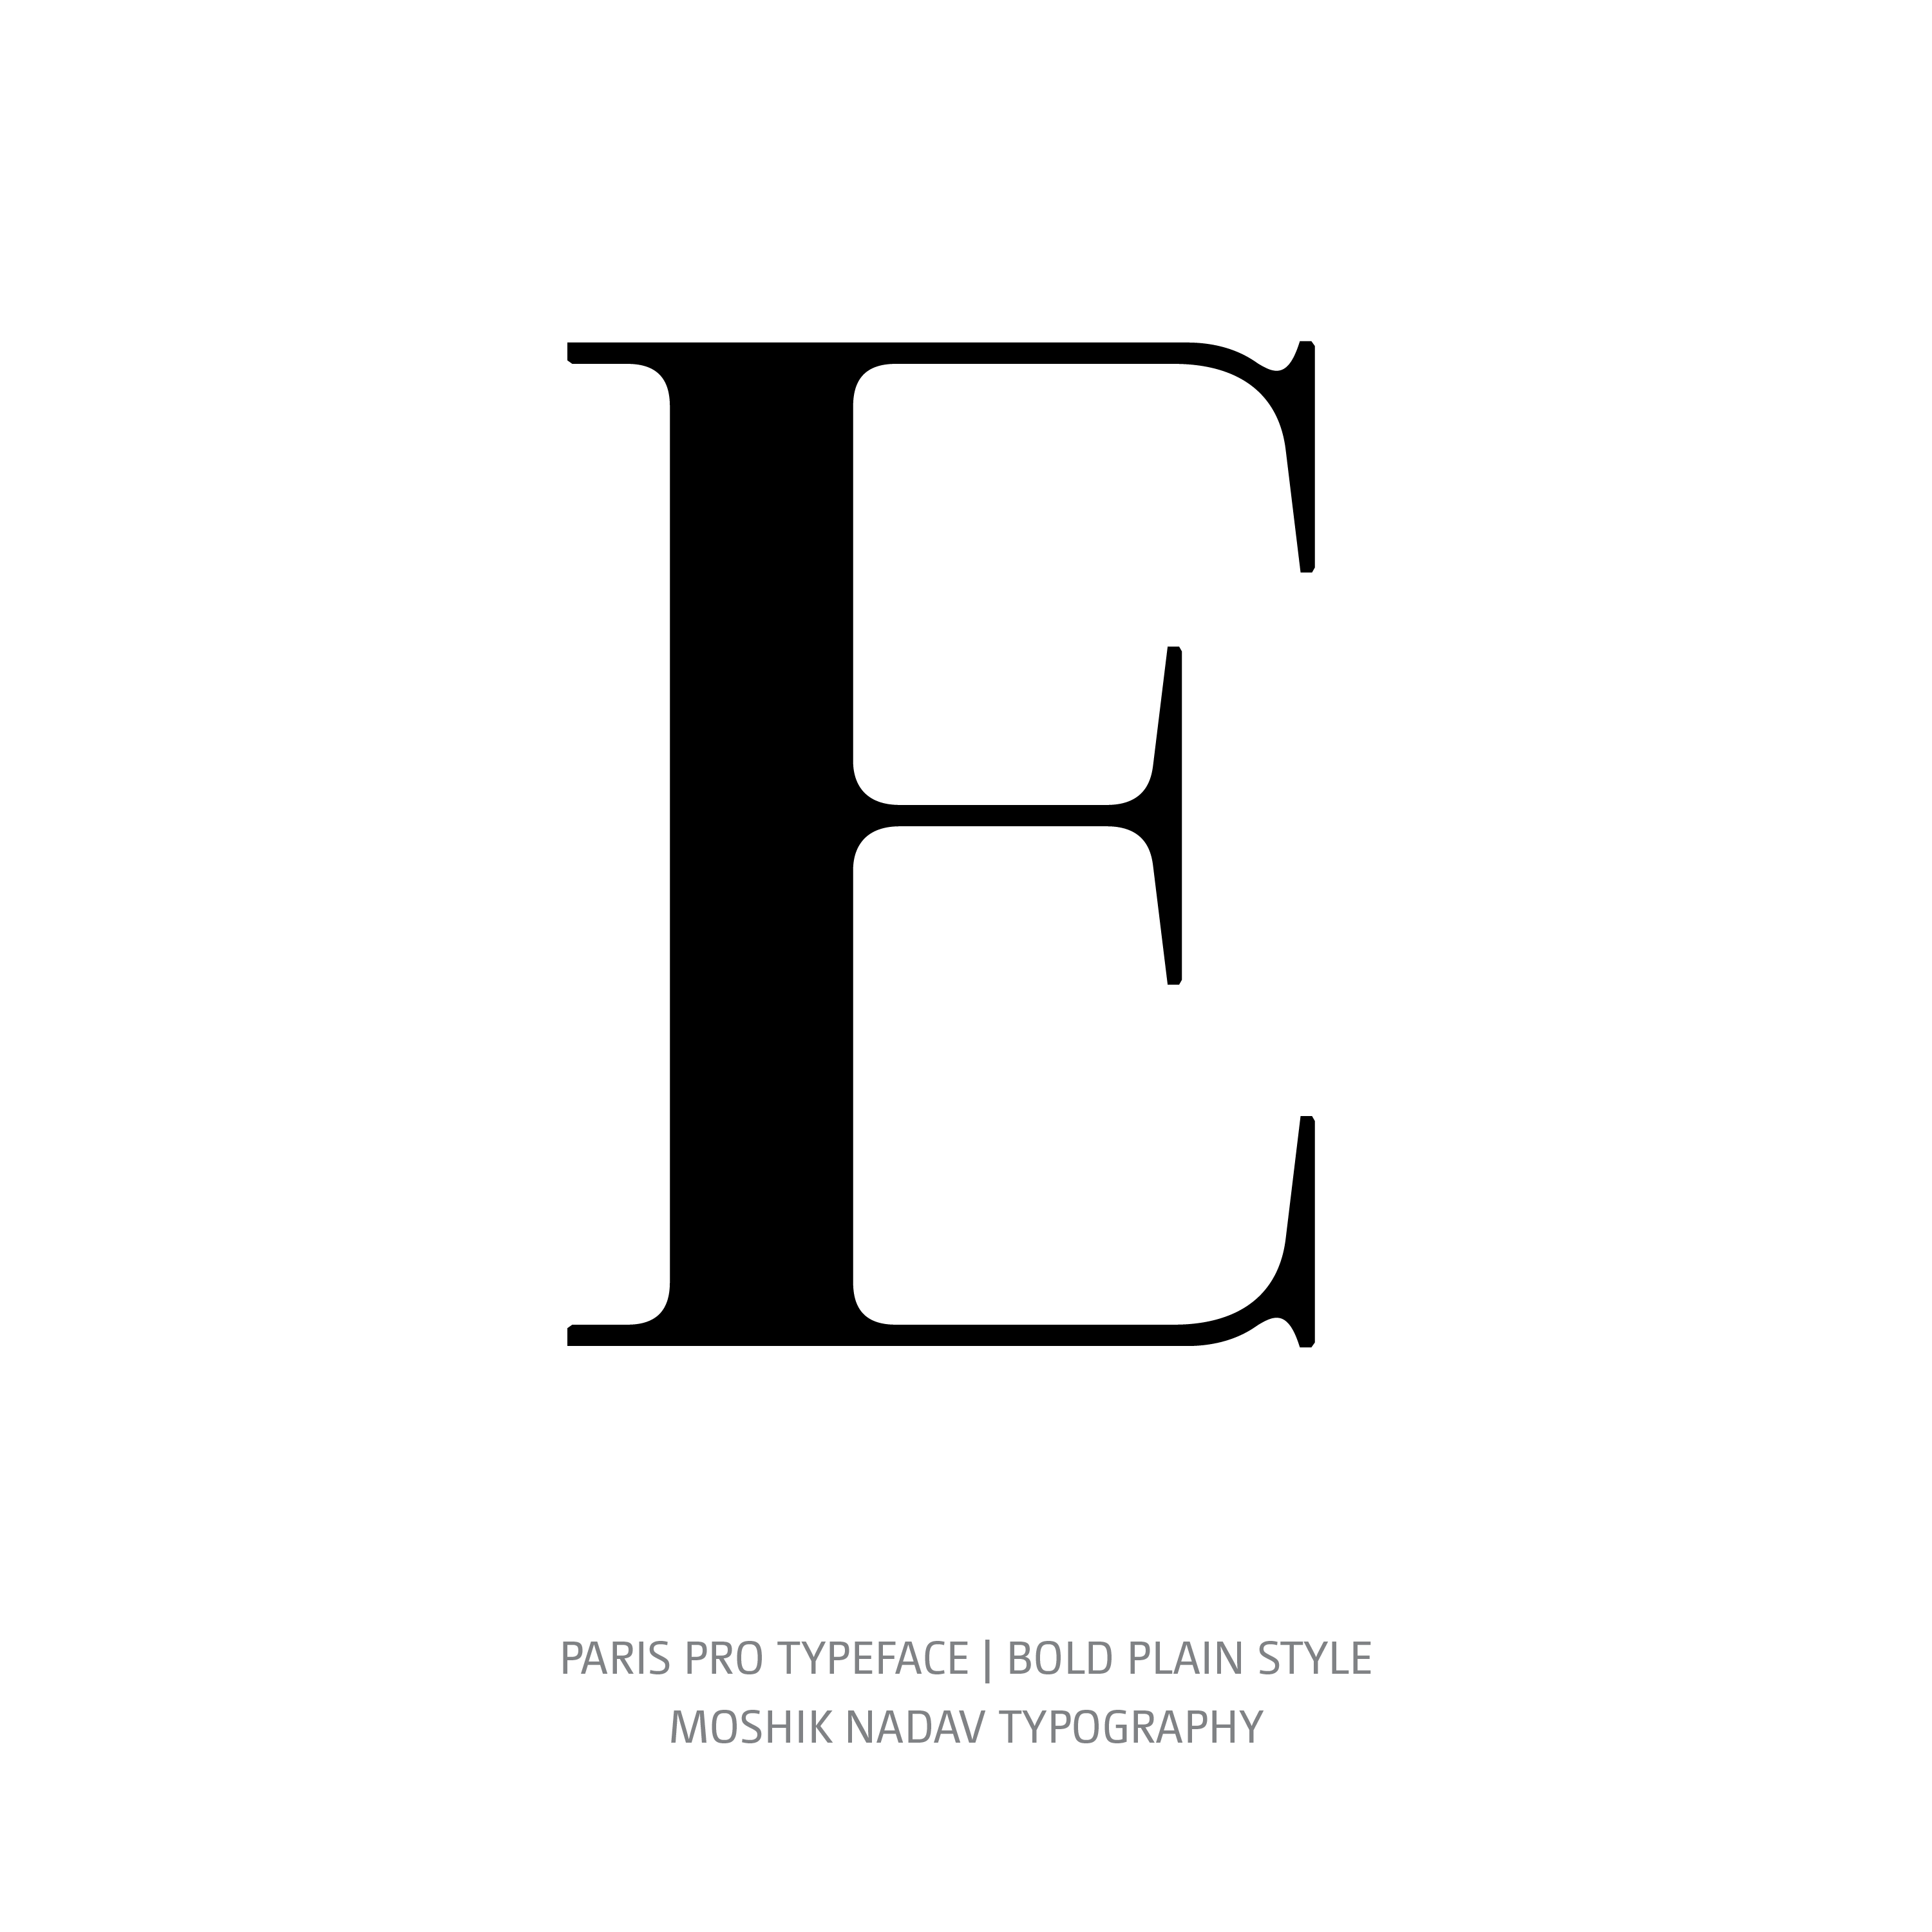 Paris Pro Typeface Bold Plain E